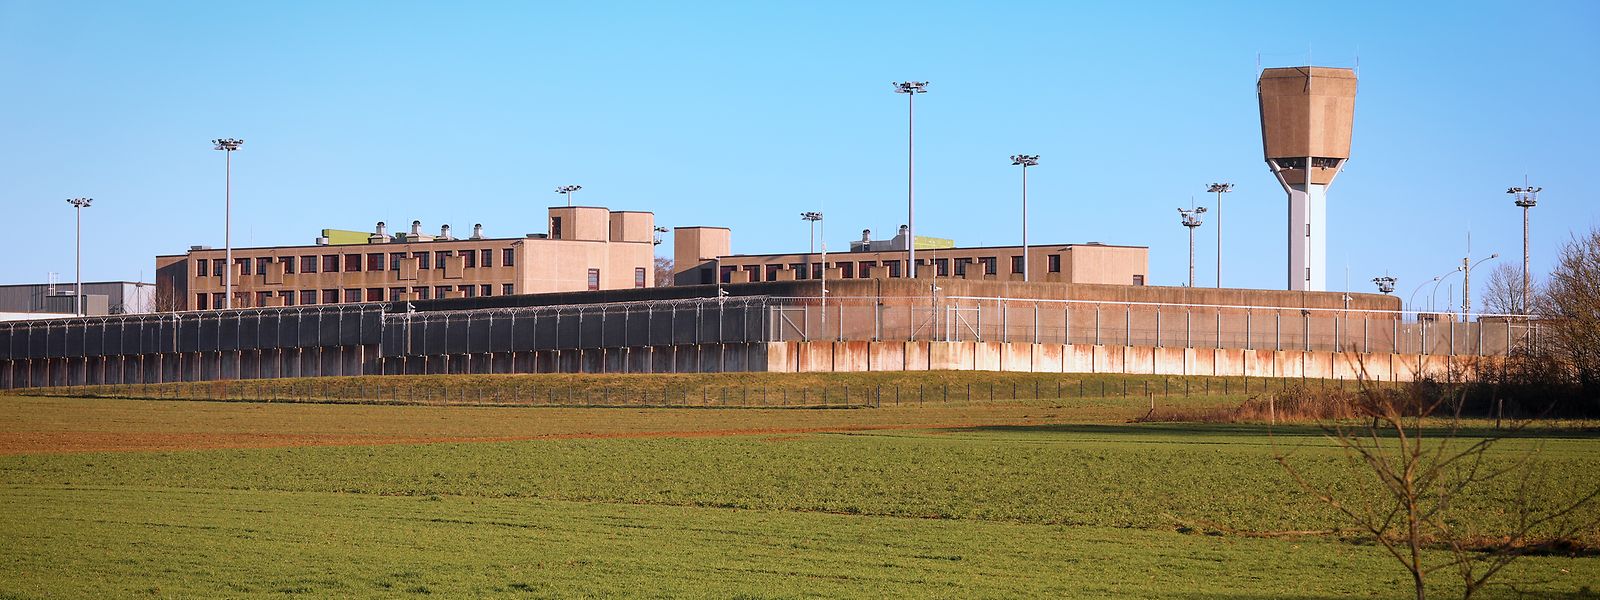 Einen ersten Covid-19-Fall unter den Insassen des Gefängnisses gab es im vergangenen März.